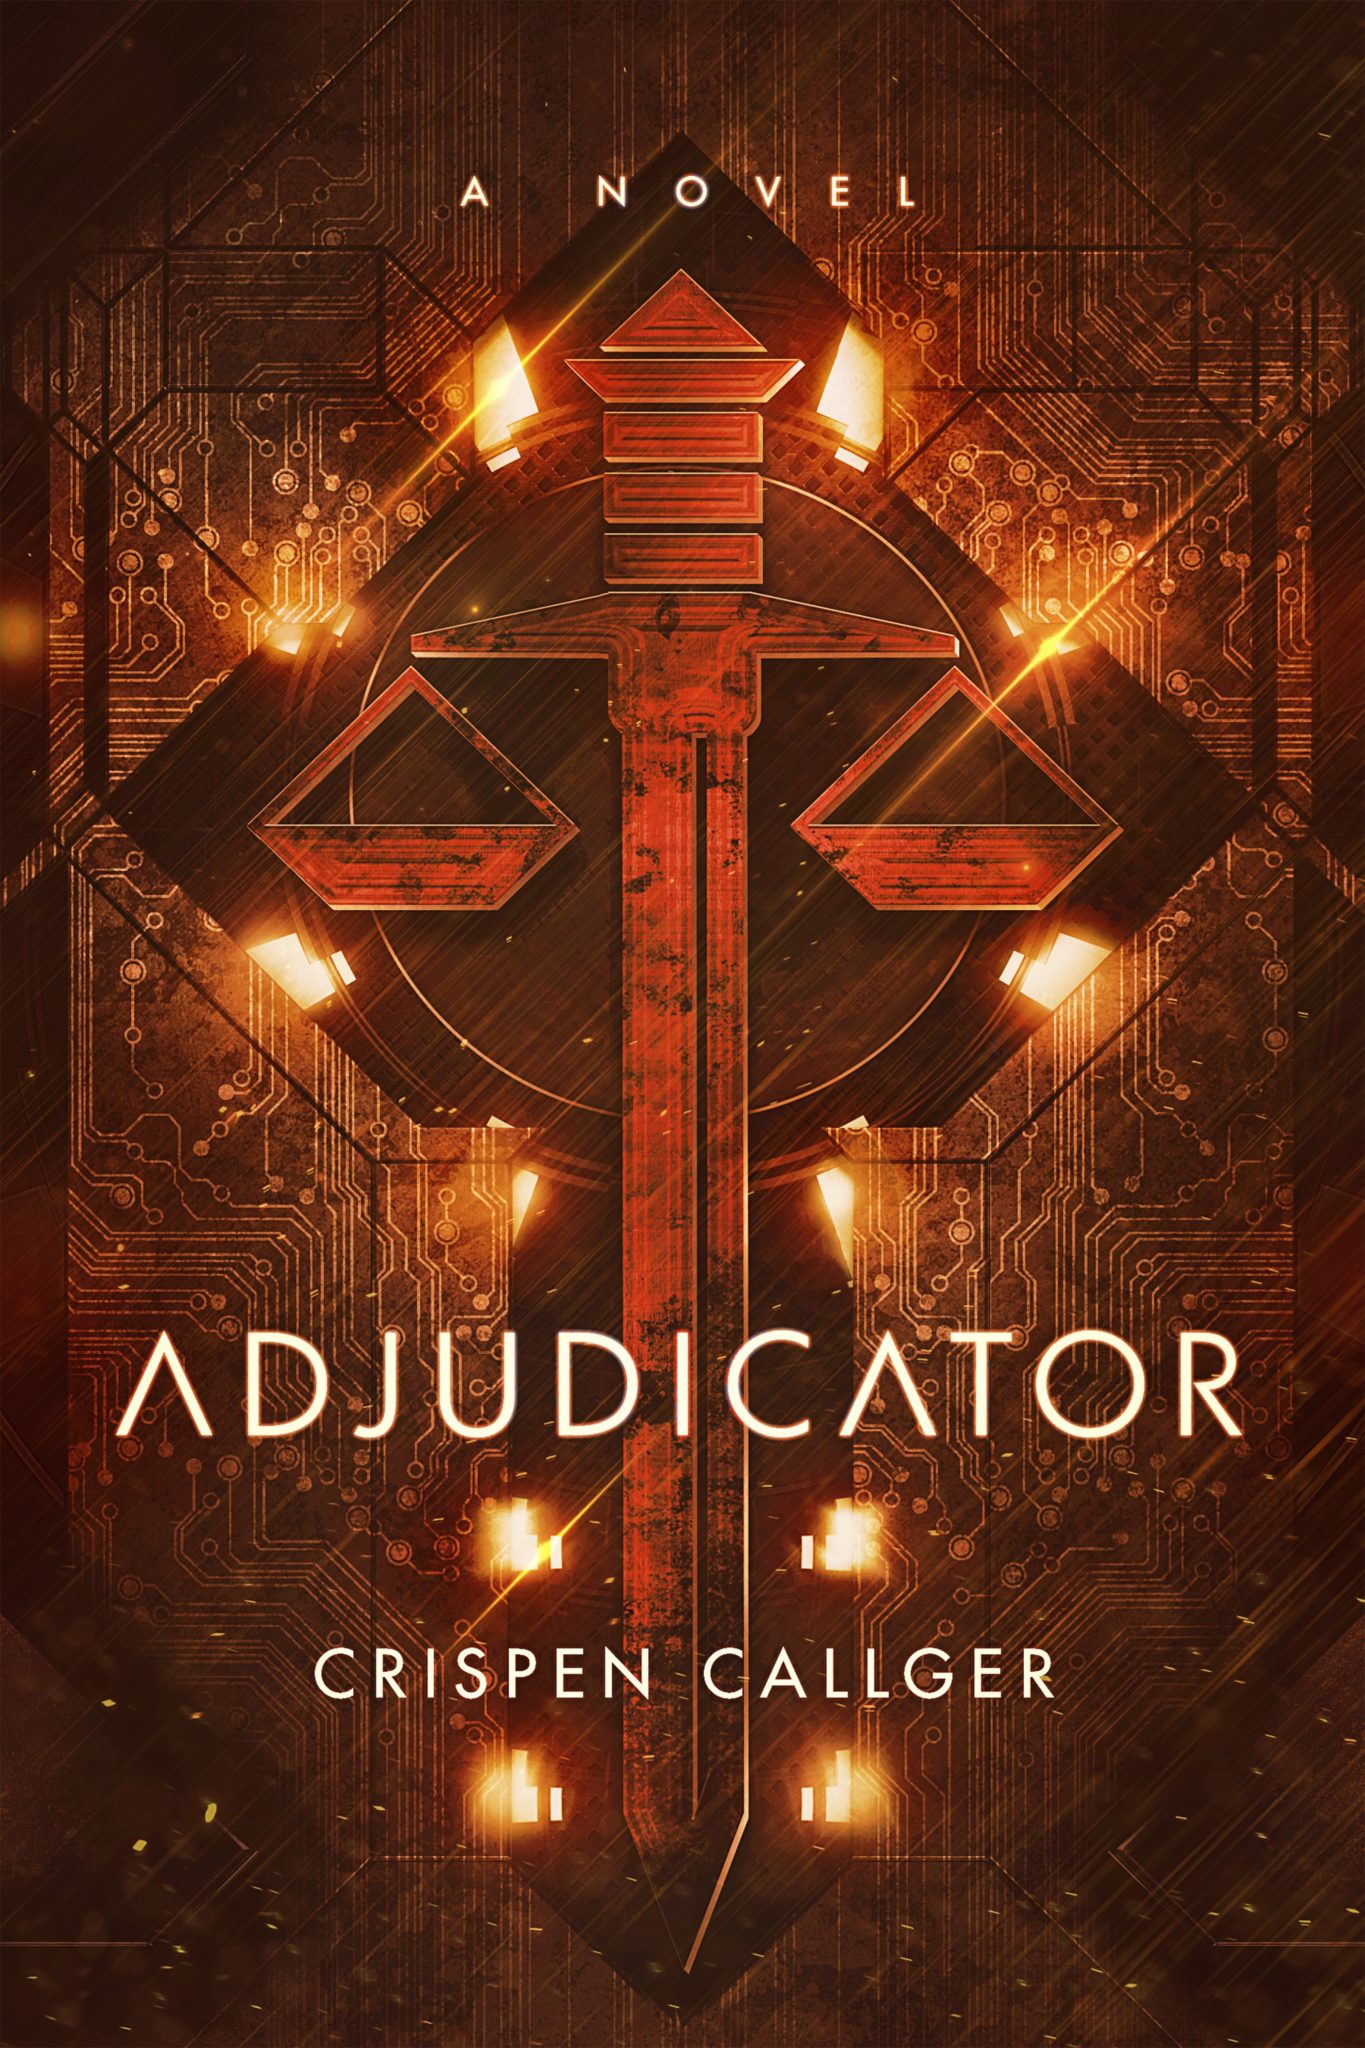 FREE: Adjudicator by Crispen Callger